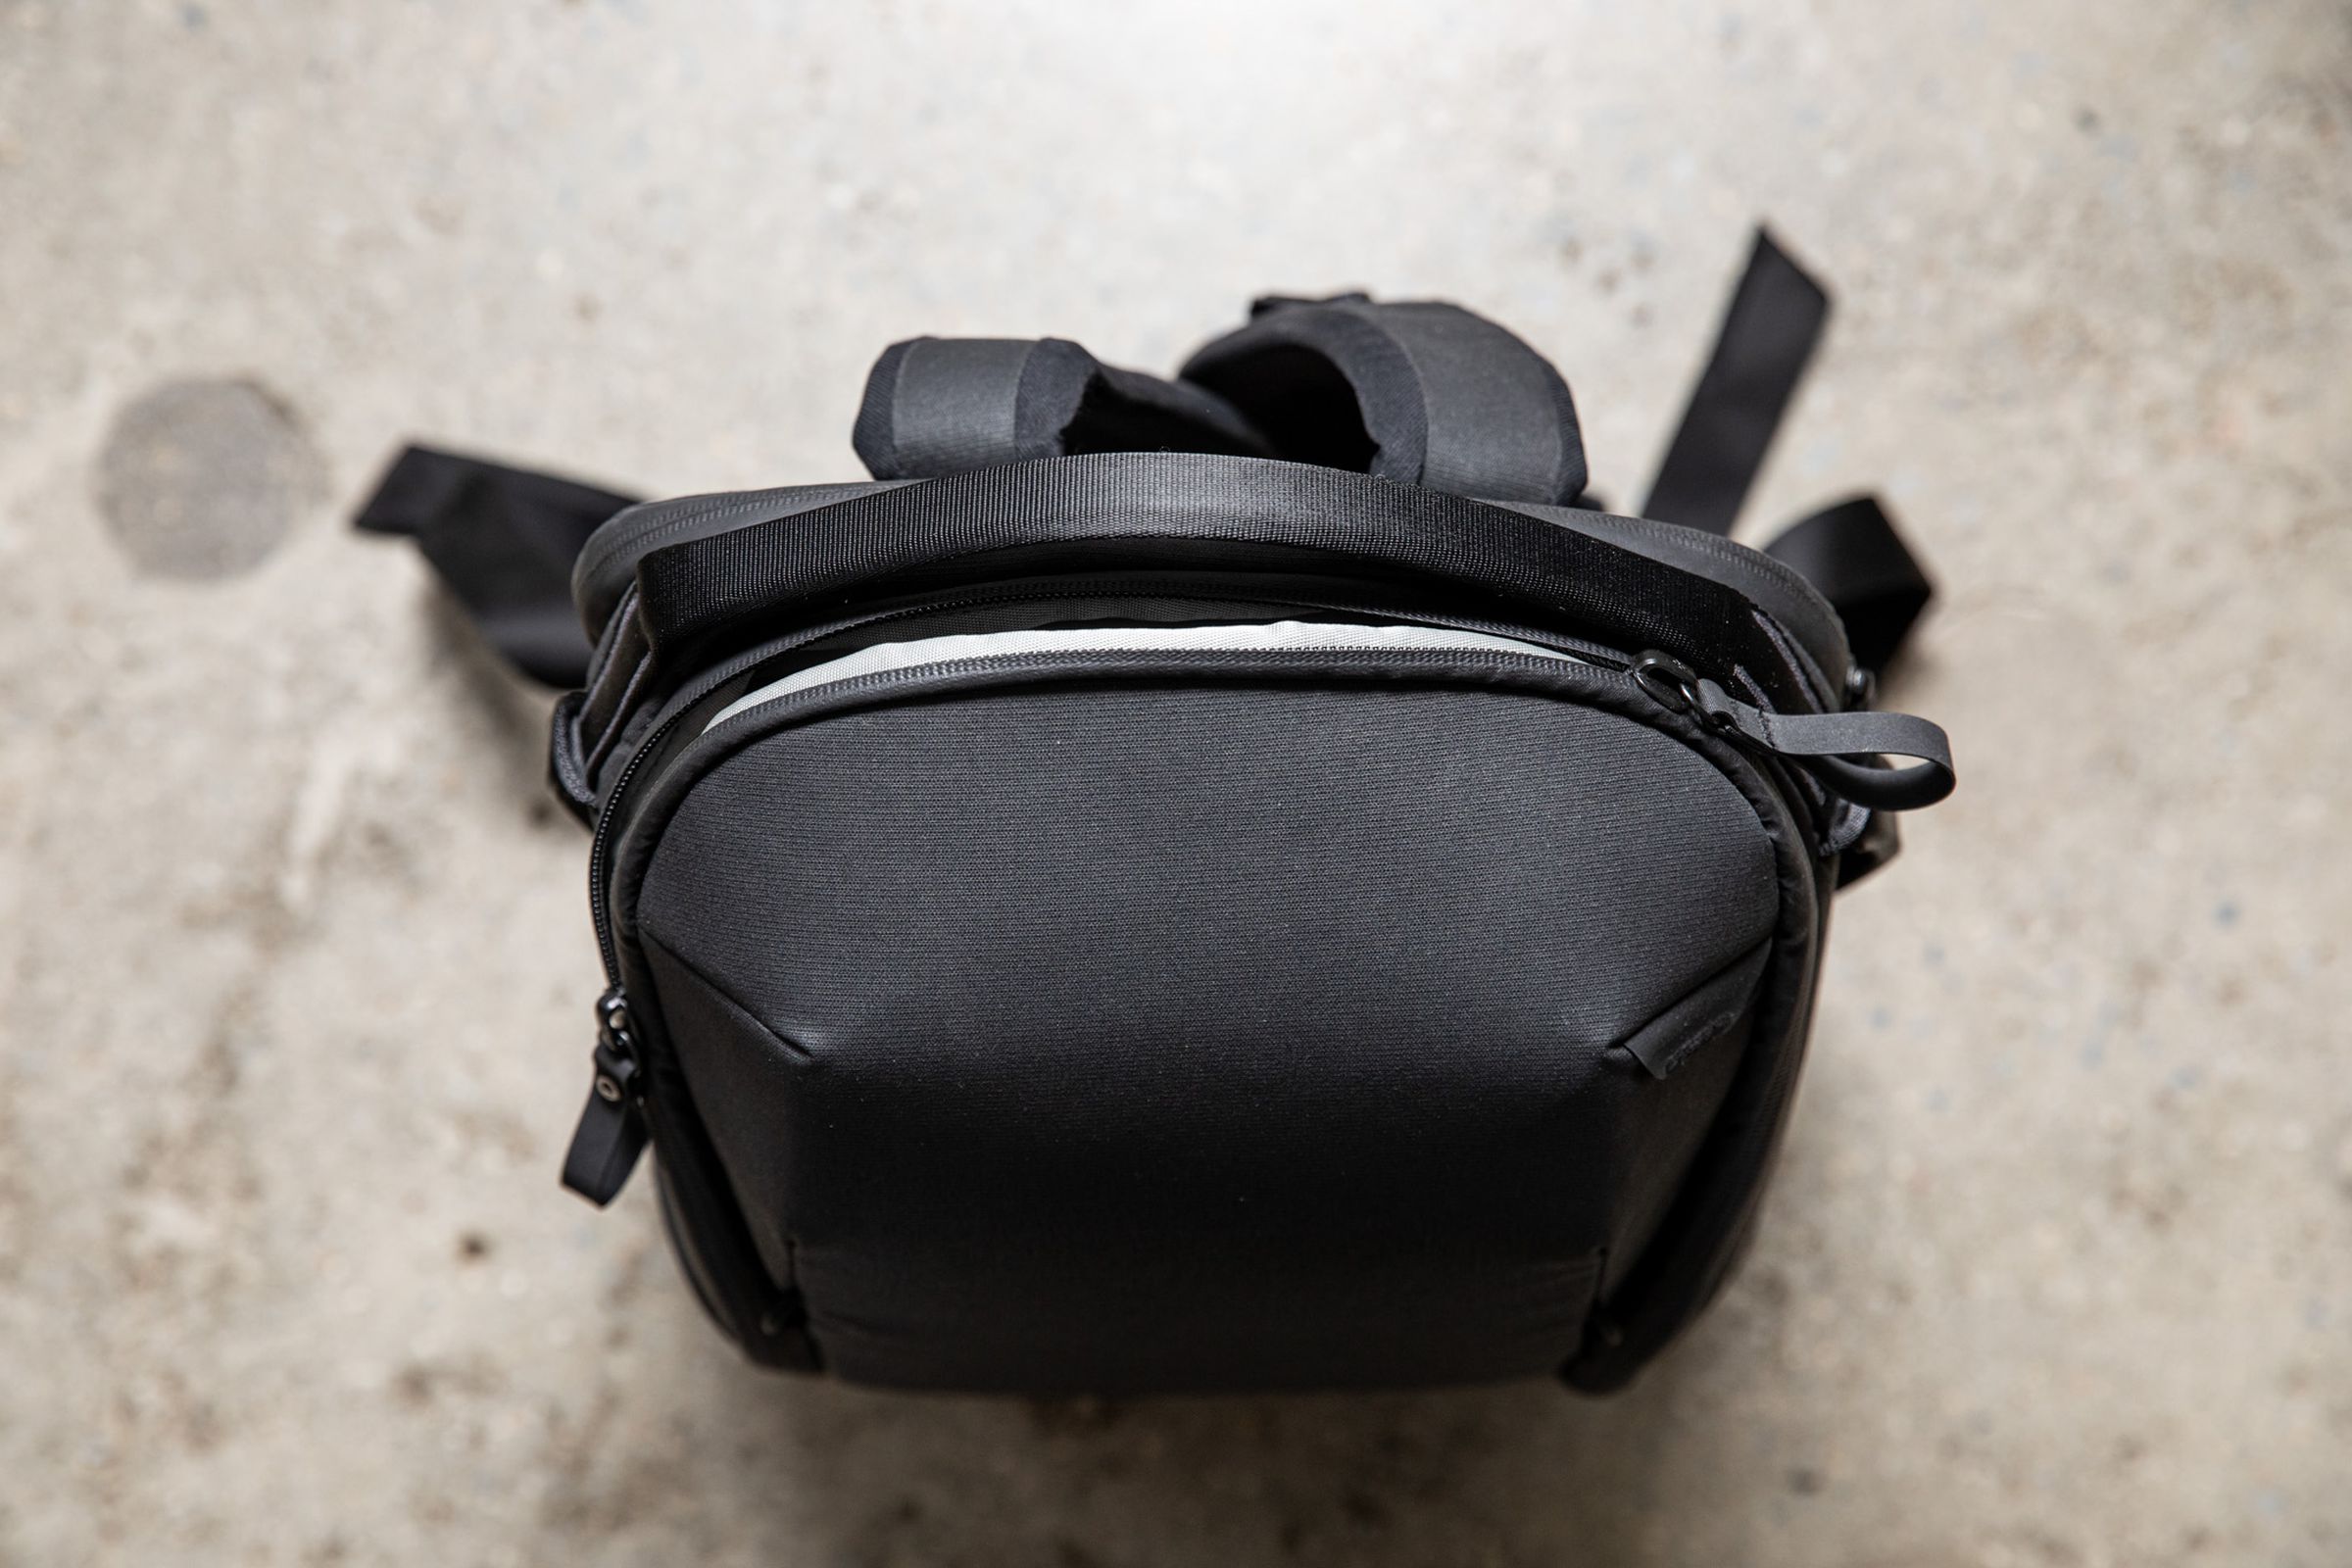 La parte superior de esta mochila negra Peak Design Everyday Backpack queda plana en el suelo.